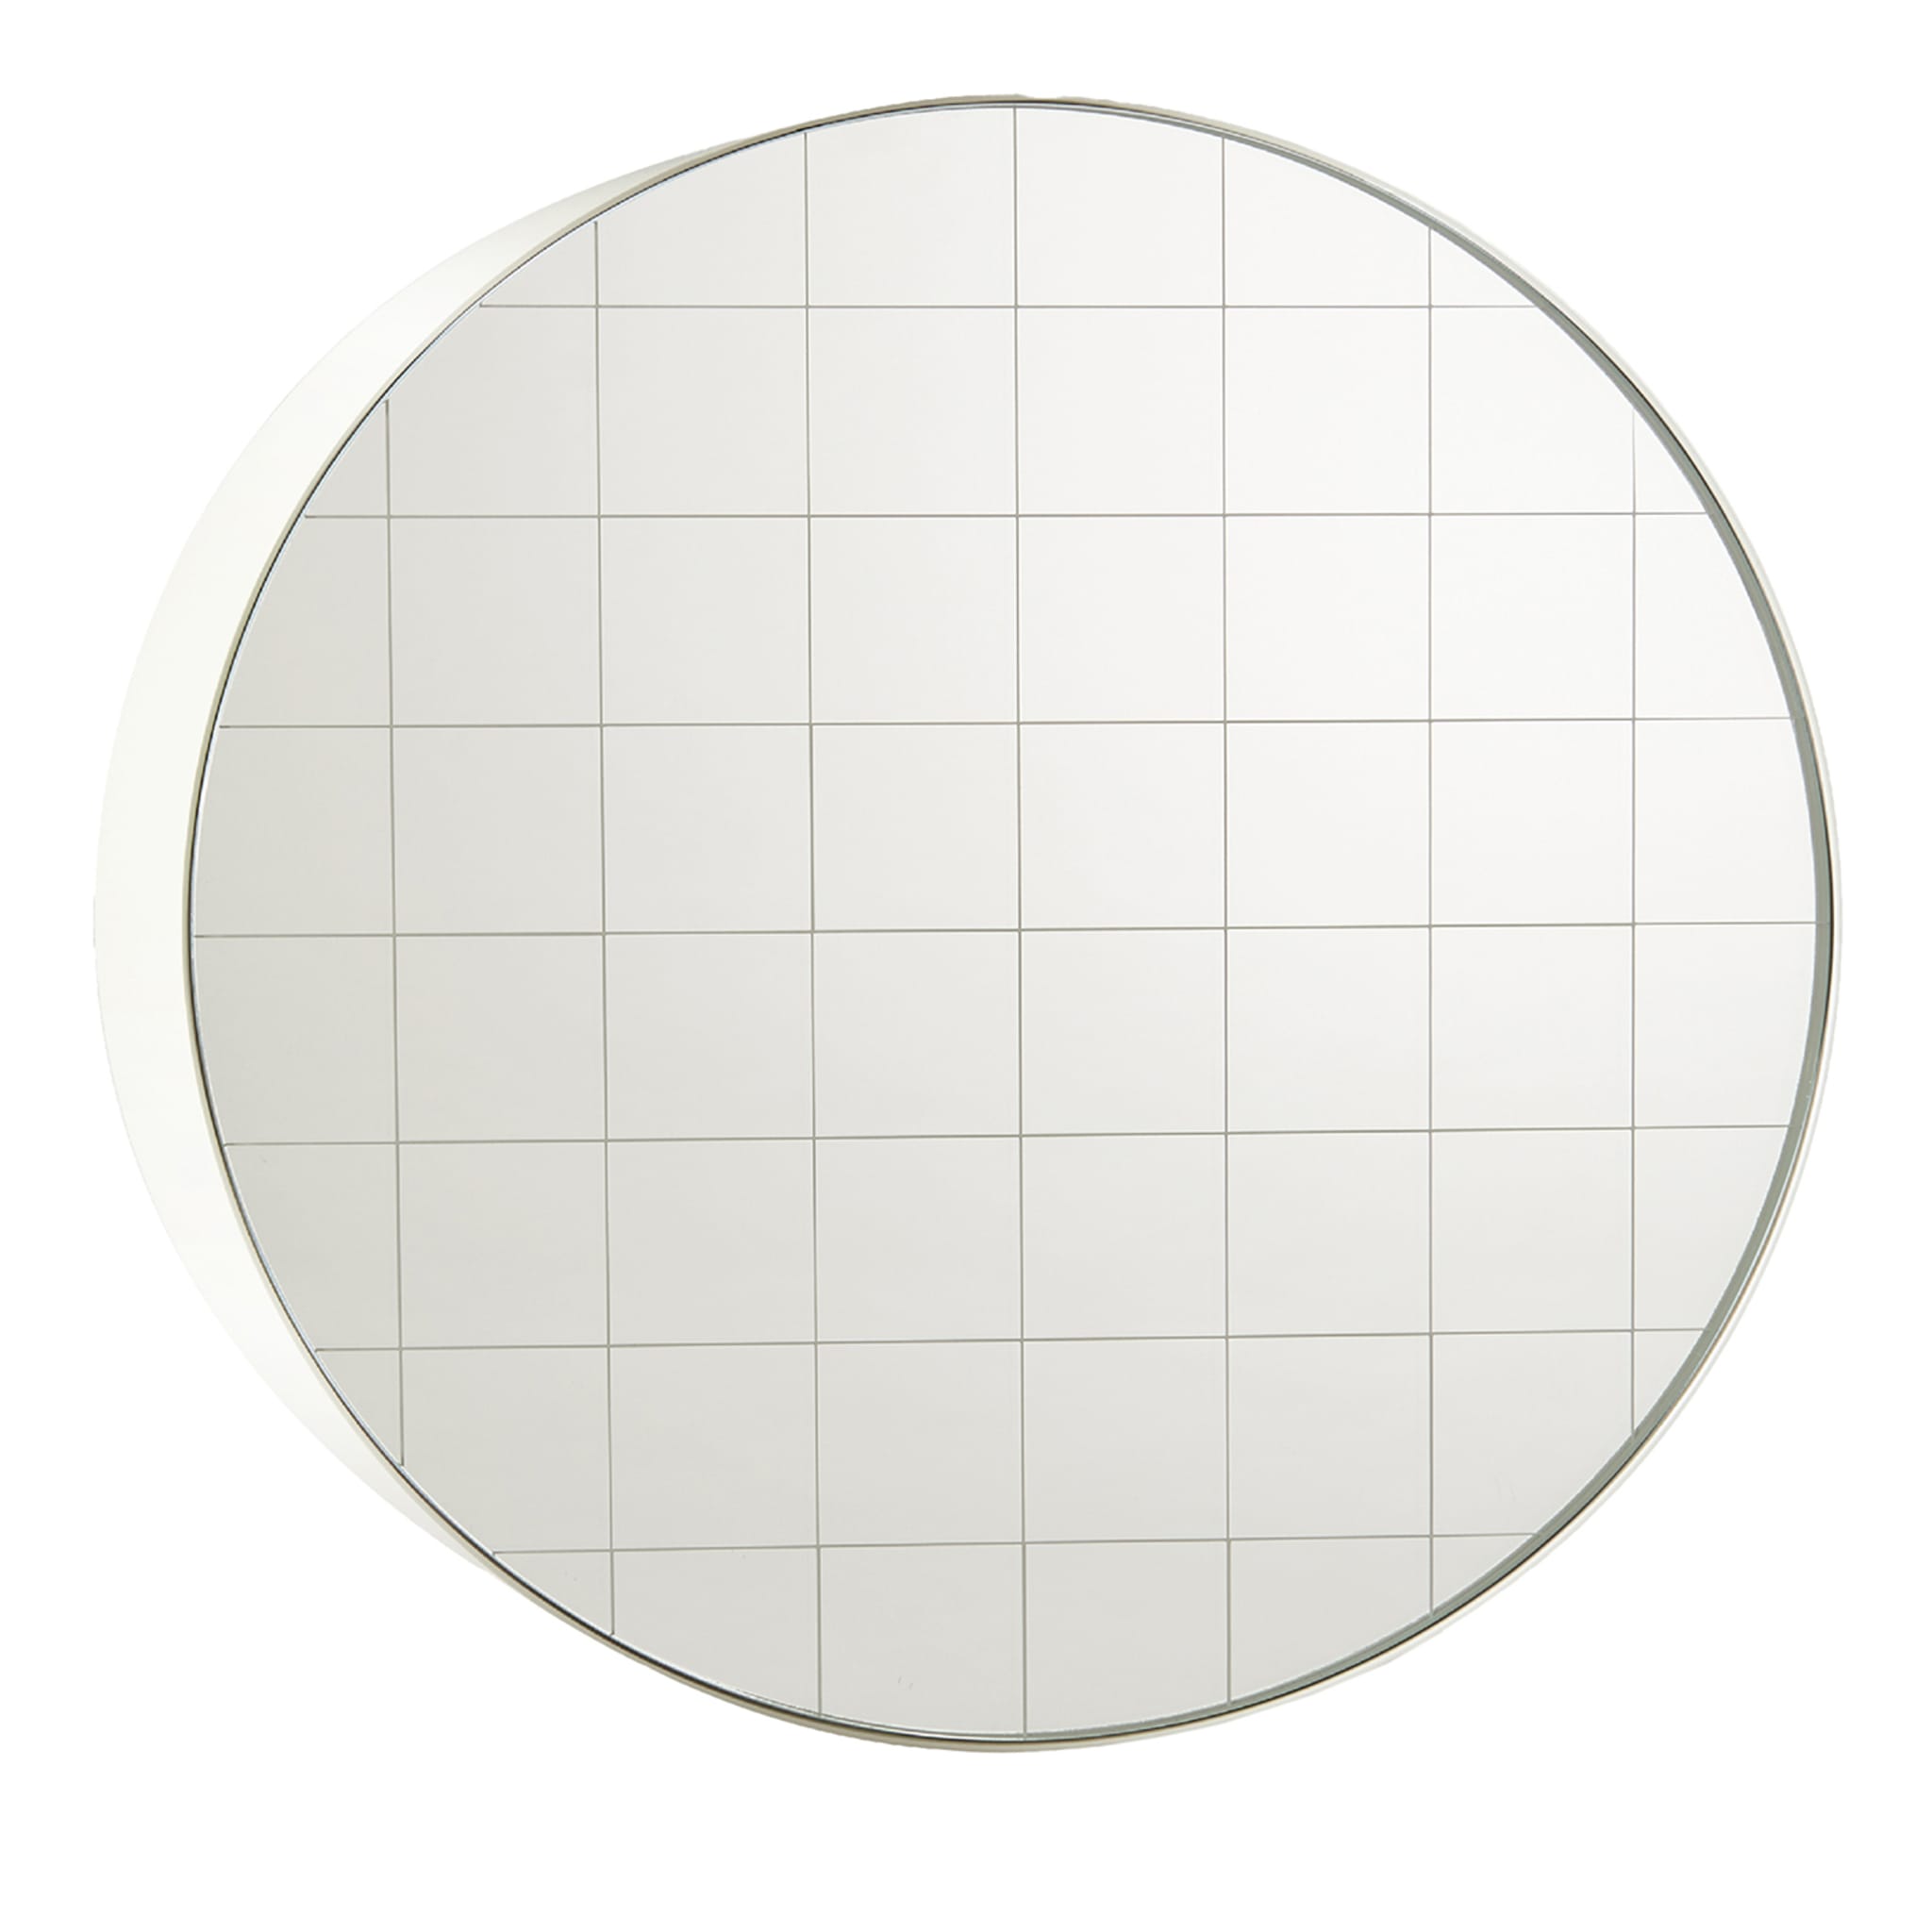 Centimetri White Round Mirror - Main view